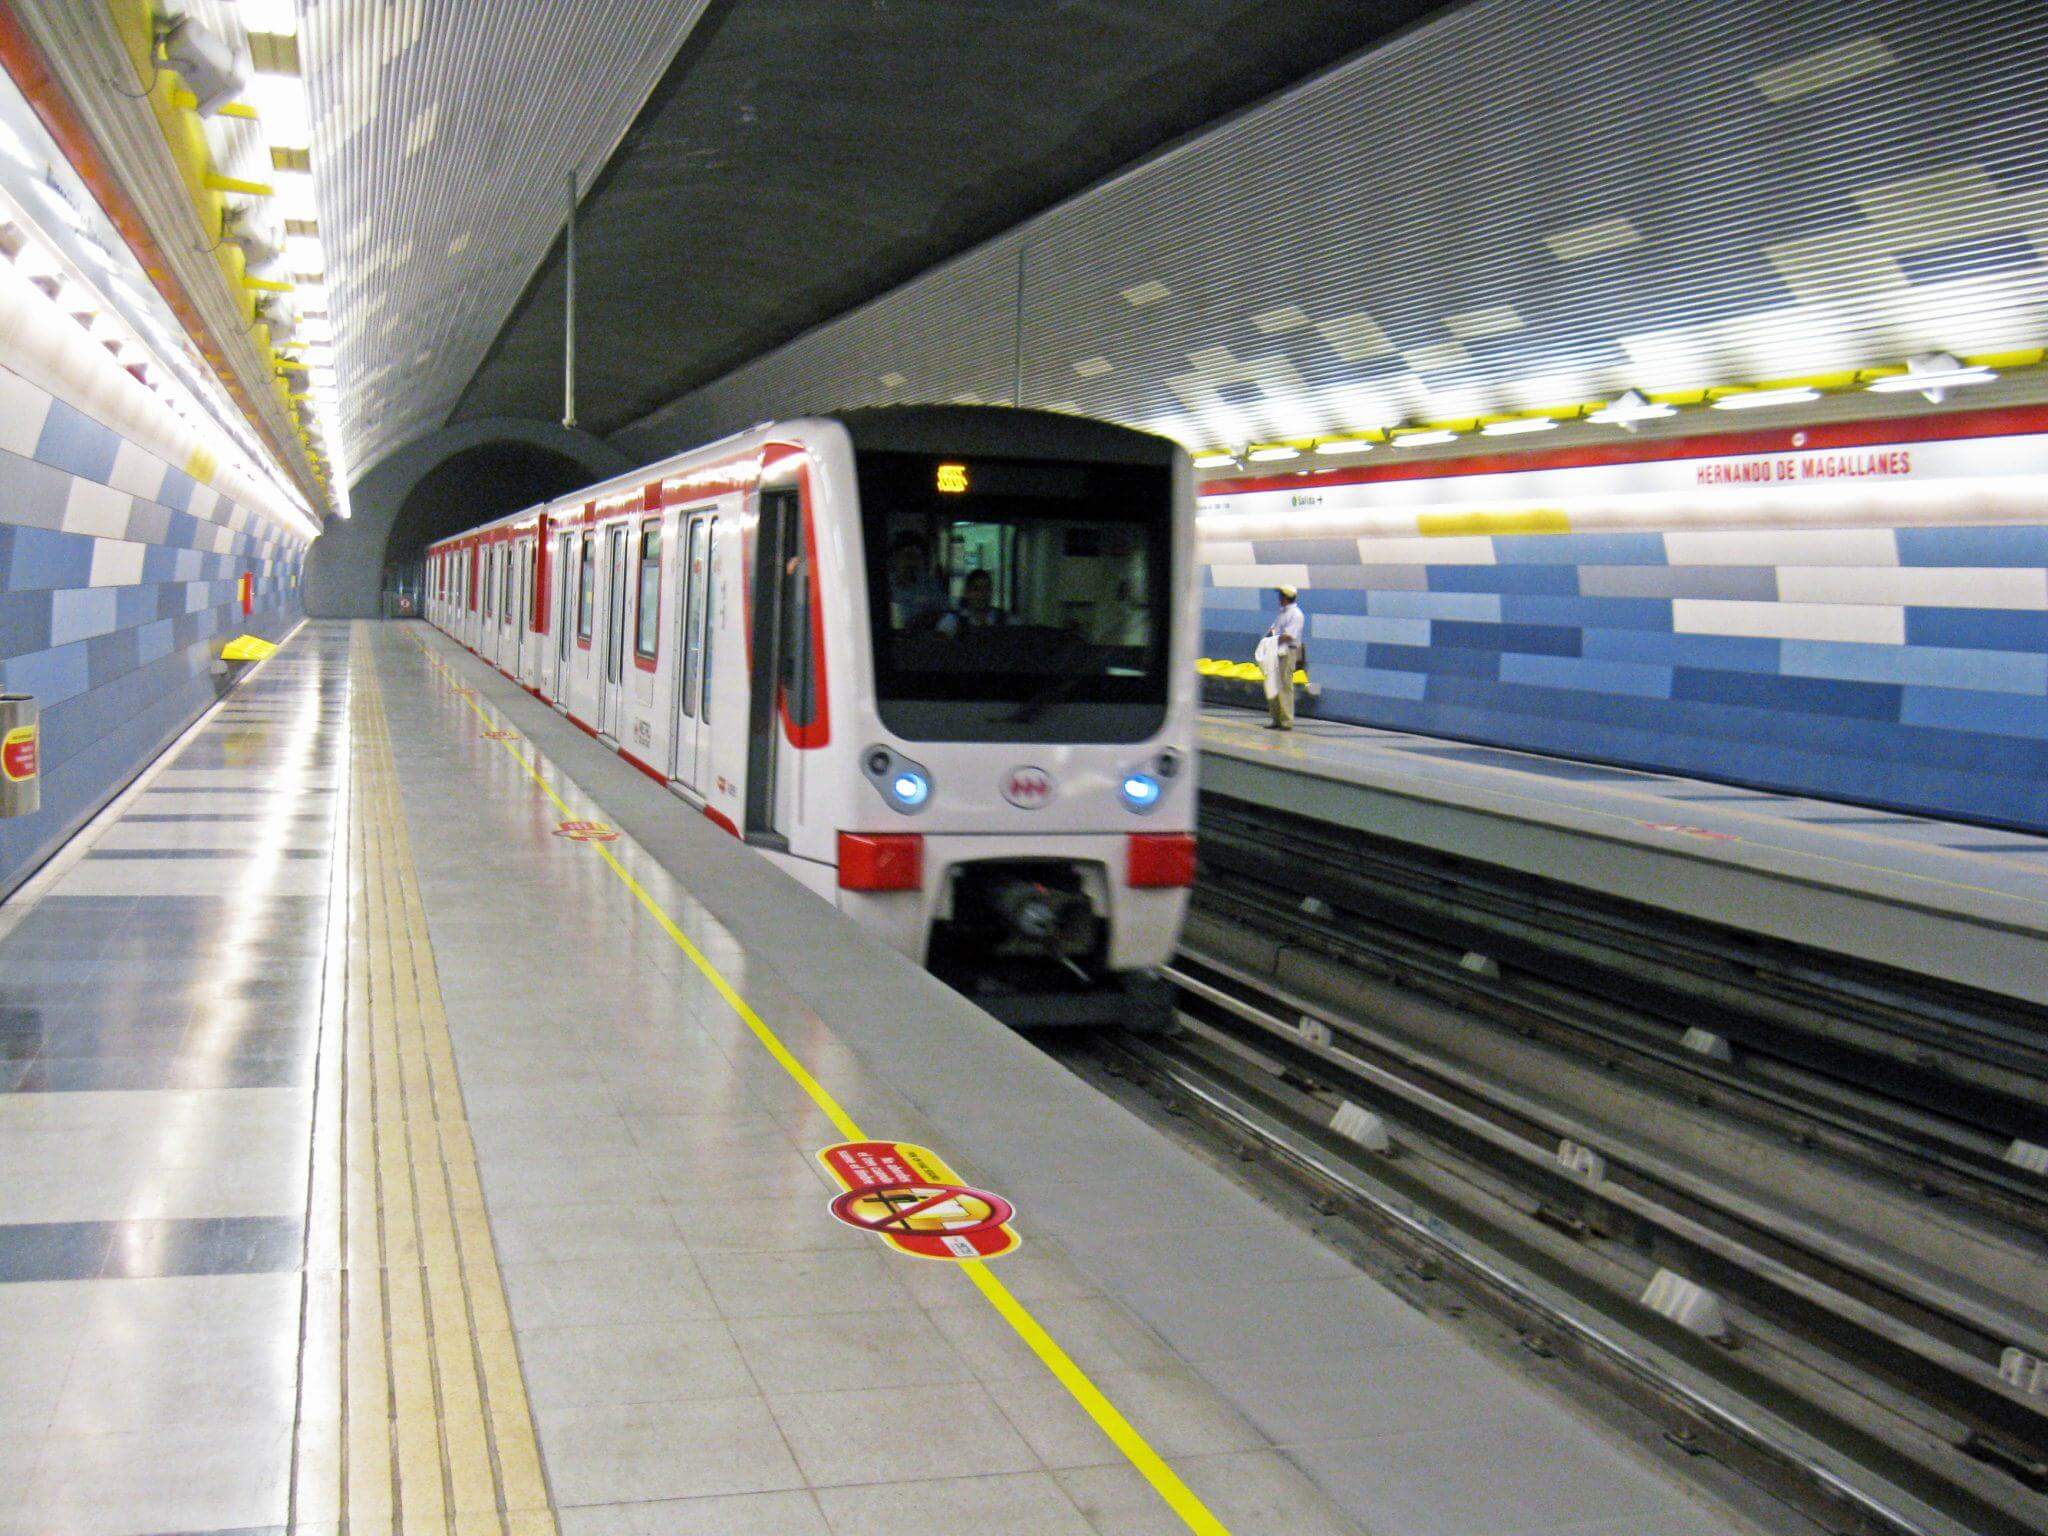 Station de métro à Santiago